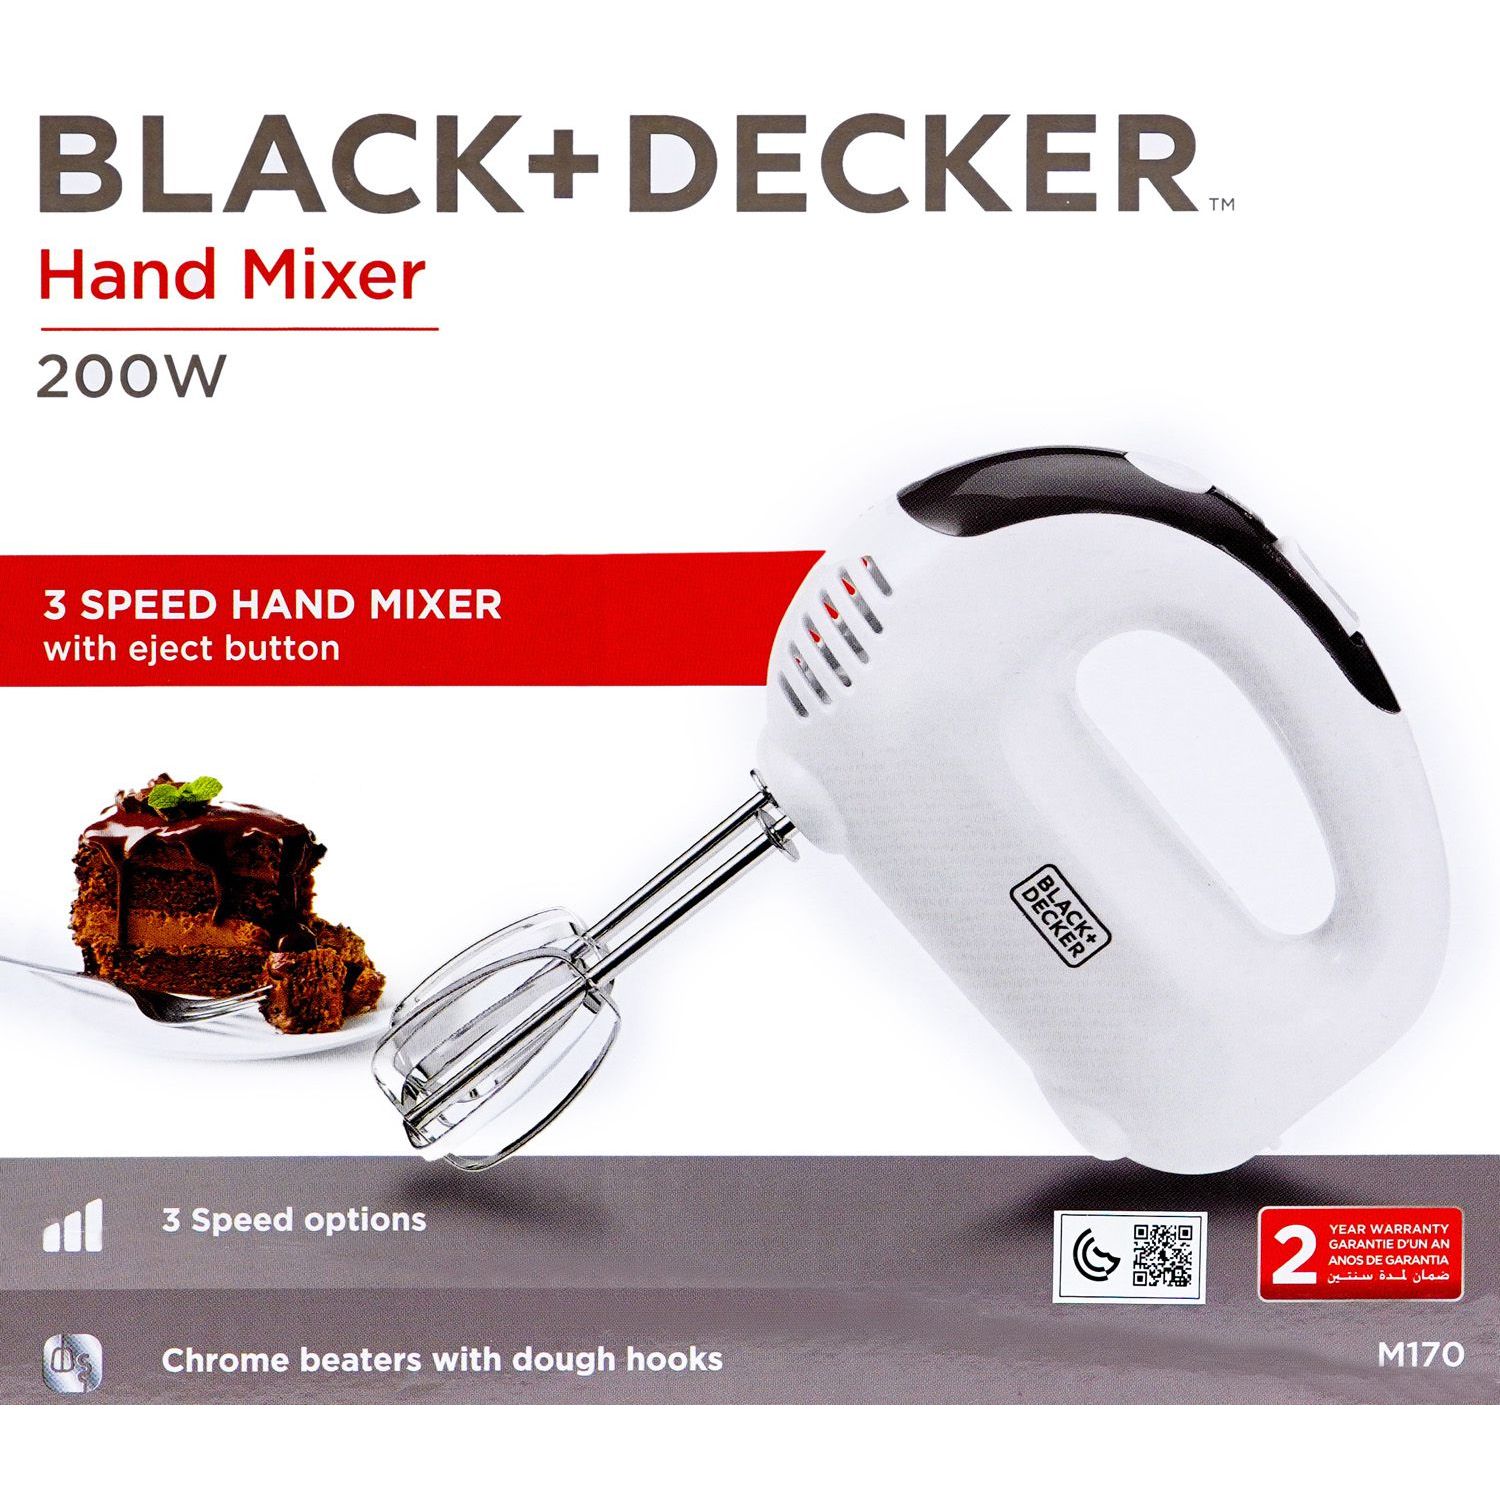 Black+Decker Hand Mixer, 3 Speed, 200W